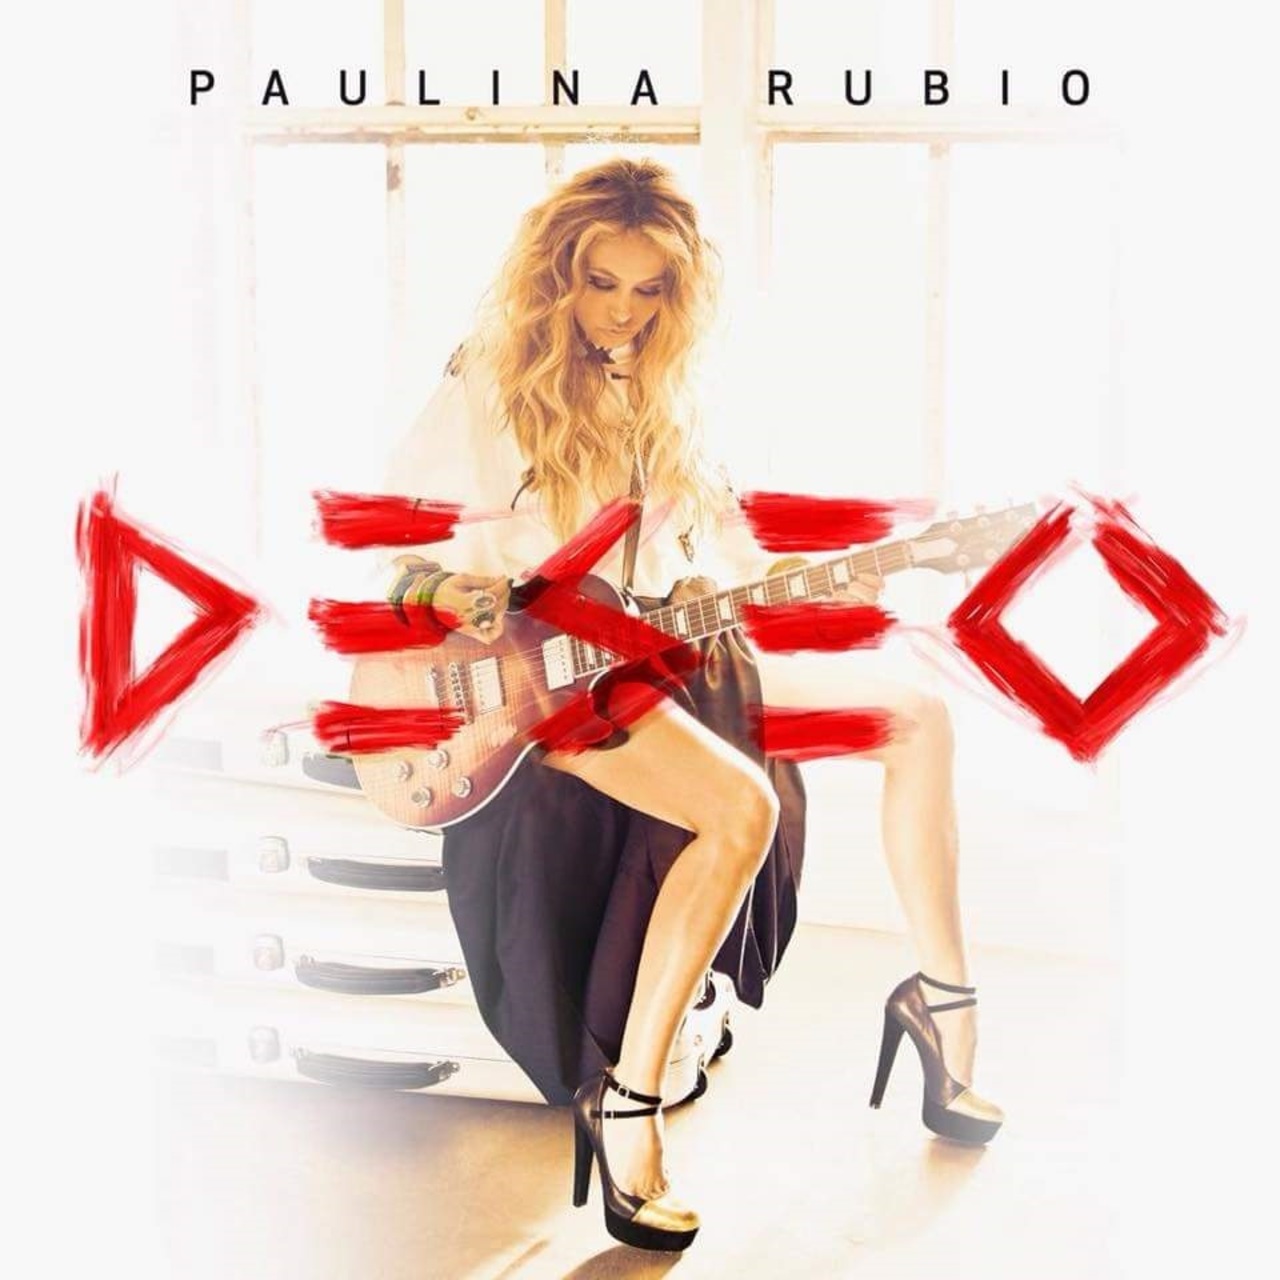 Material discográfico. La cantante Paulina Rubio estrenará su disco Deseo el próximo 14 de septiembre. (ARCHIVO)